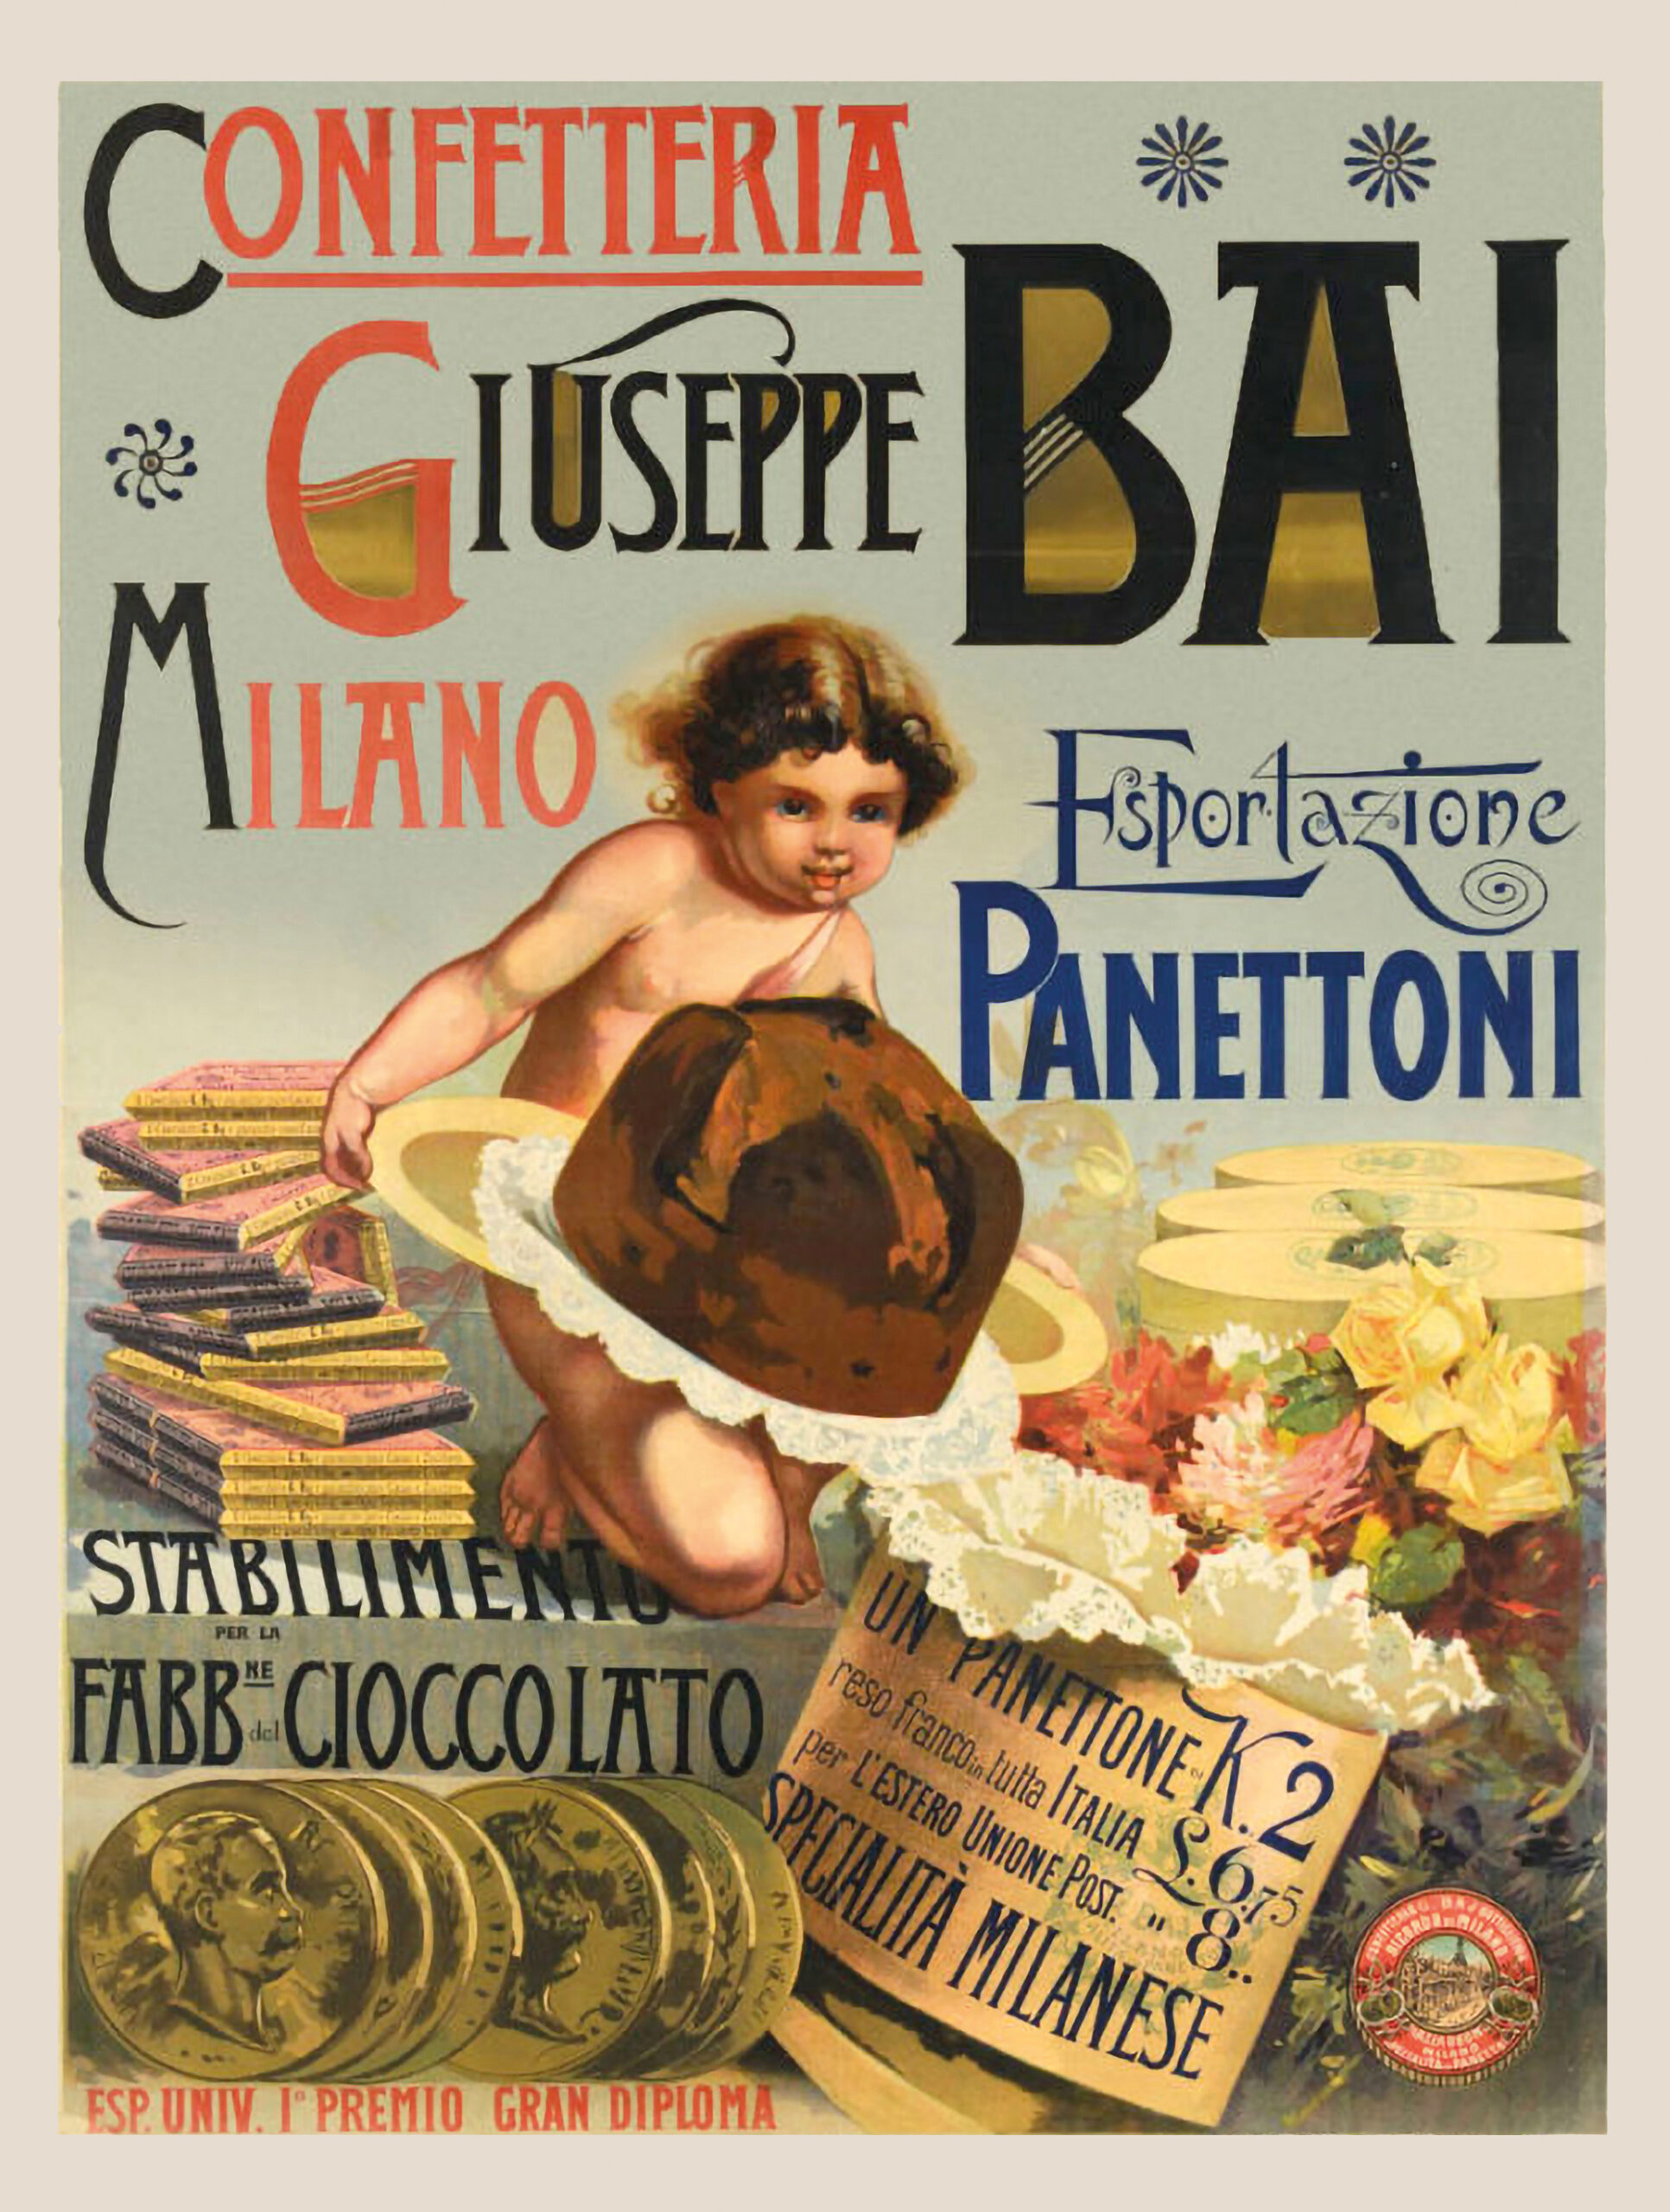 Poster pubblicitario Confetteria Giuseppe Baj Milano - Esportazione di Panettoni Baj